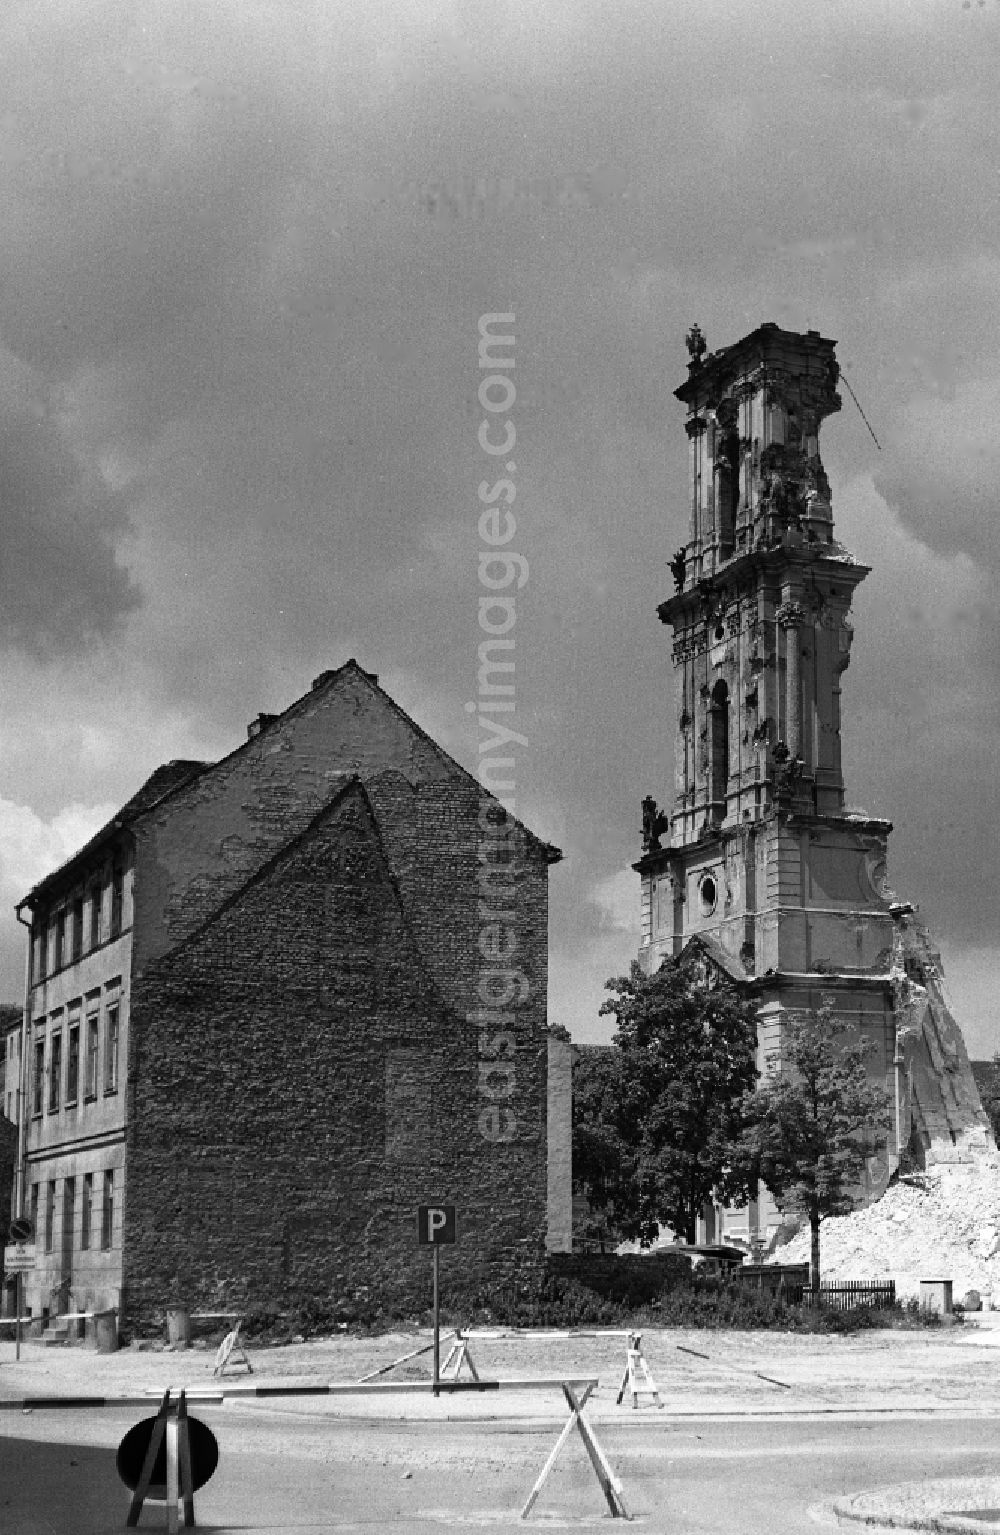 GDR picture archive: Potsdam - Abriss der Garnisonkirche. Blick von der Bauhofstraße auf die Reste vom Glockenturm. Rechts im Vordergrund eines der beiden Knobbelsdorfhäuser. Die Garnisonkirche Potsdam wurde von Philipp Gerlach zwischen 1730 und 1735 auf Befehl Friedrich Wilhelm I. errichtet. Sie galt als ein Hauptwerk des preußischen Barock. Mit einem 88,40 Meter hohen Glockenturm überragte sie die anderen Bauten der Stadt. In der offenen Turmlaterne befand sich ein holländisches Glockenspiel mit 4